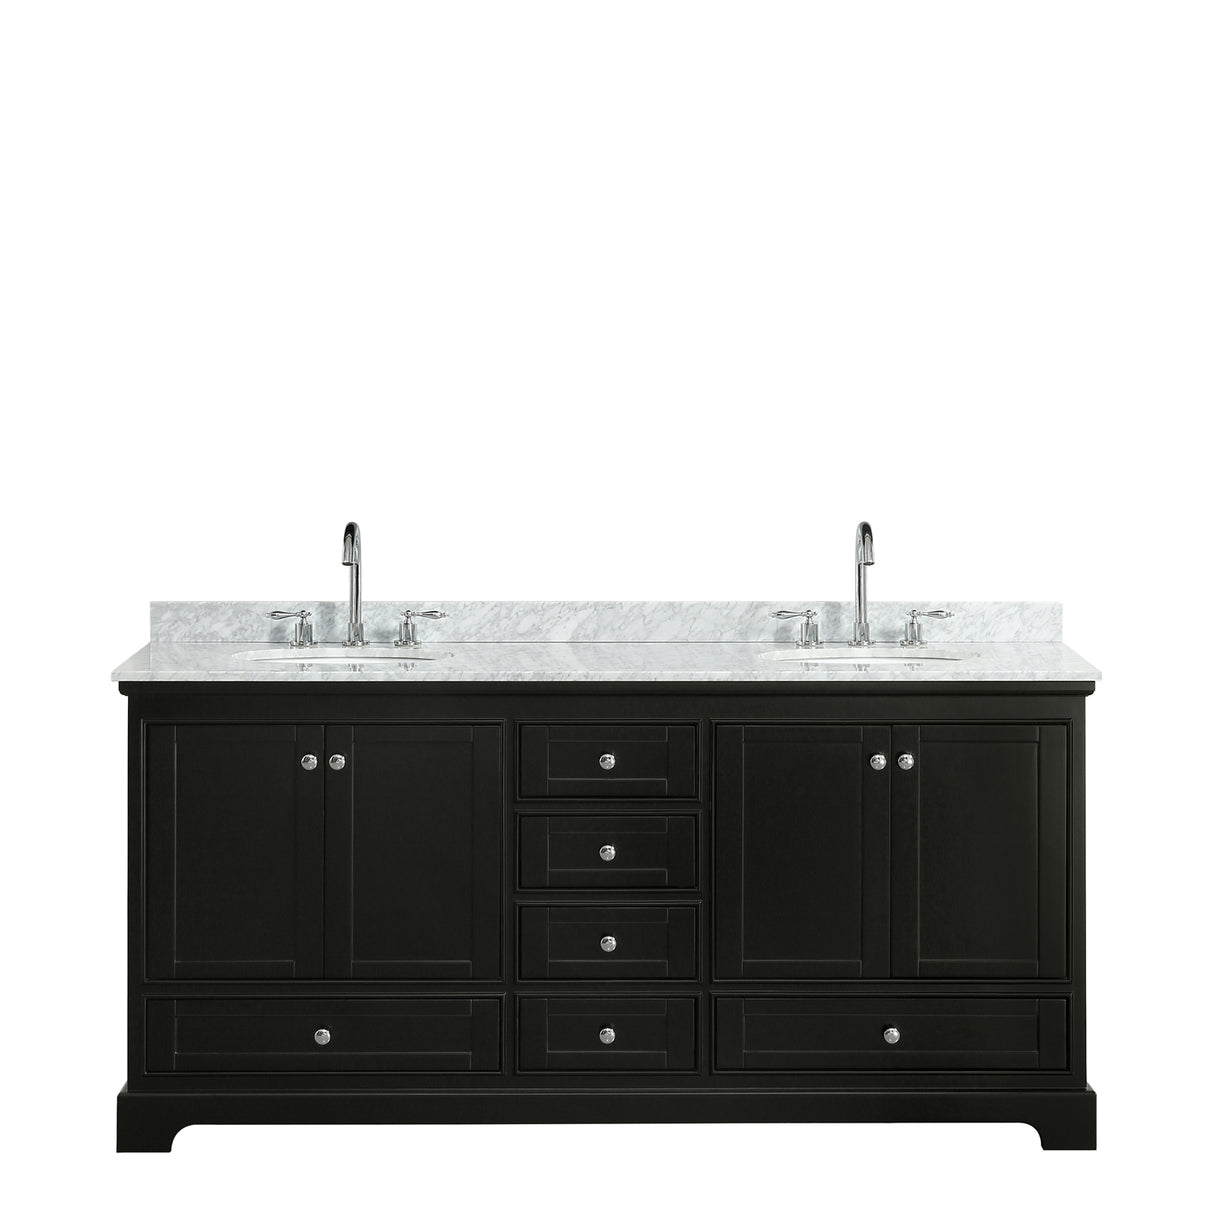 Deborah 72 Inch Double Bathroom Vanity in Dark Espresso White Carrara Marble Countertop Undermount Oval Sinks and No Mirrors